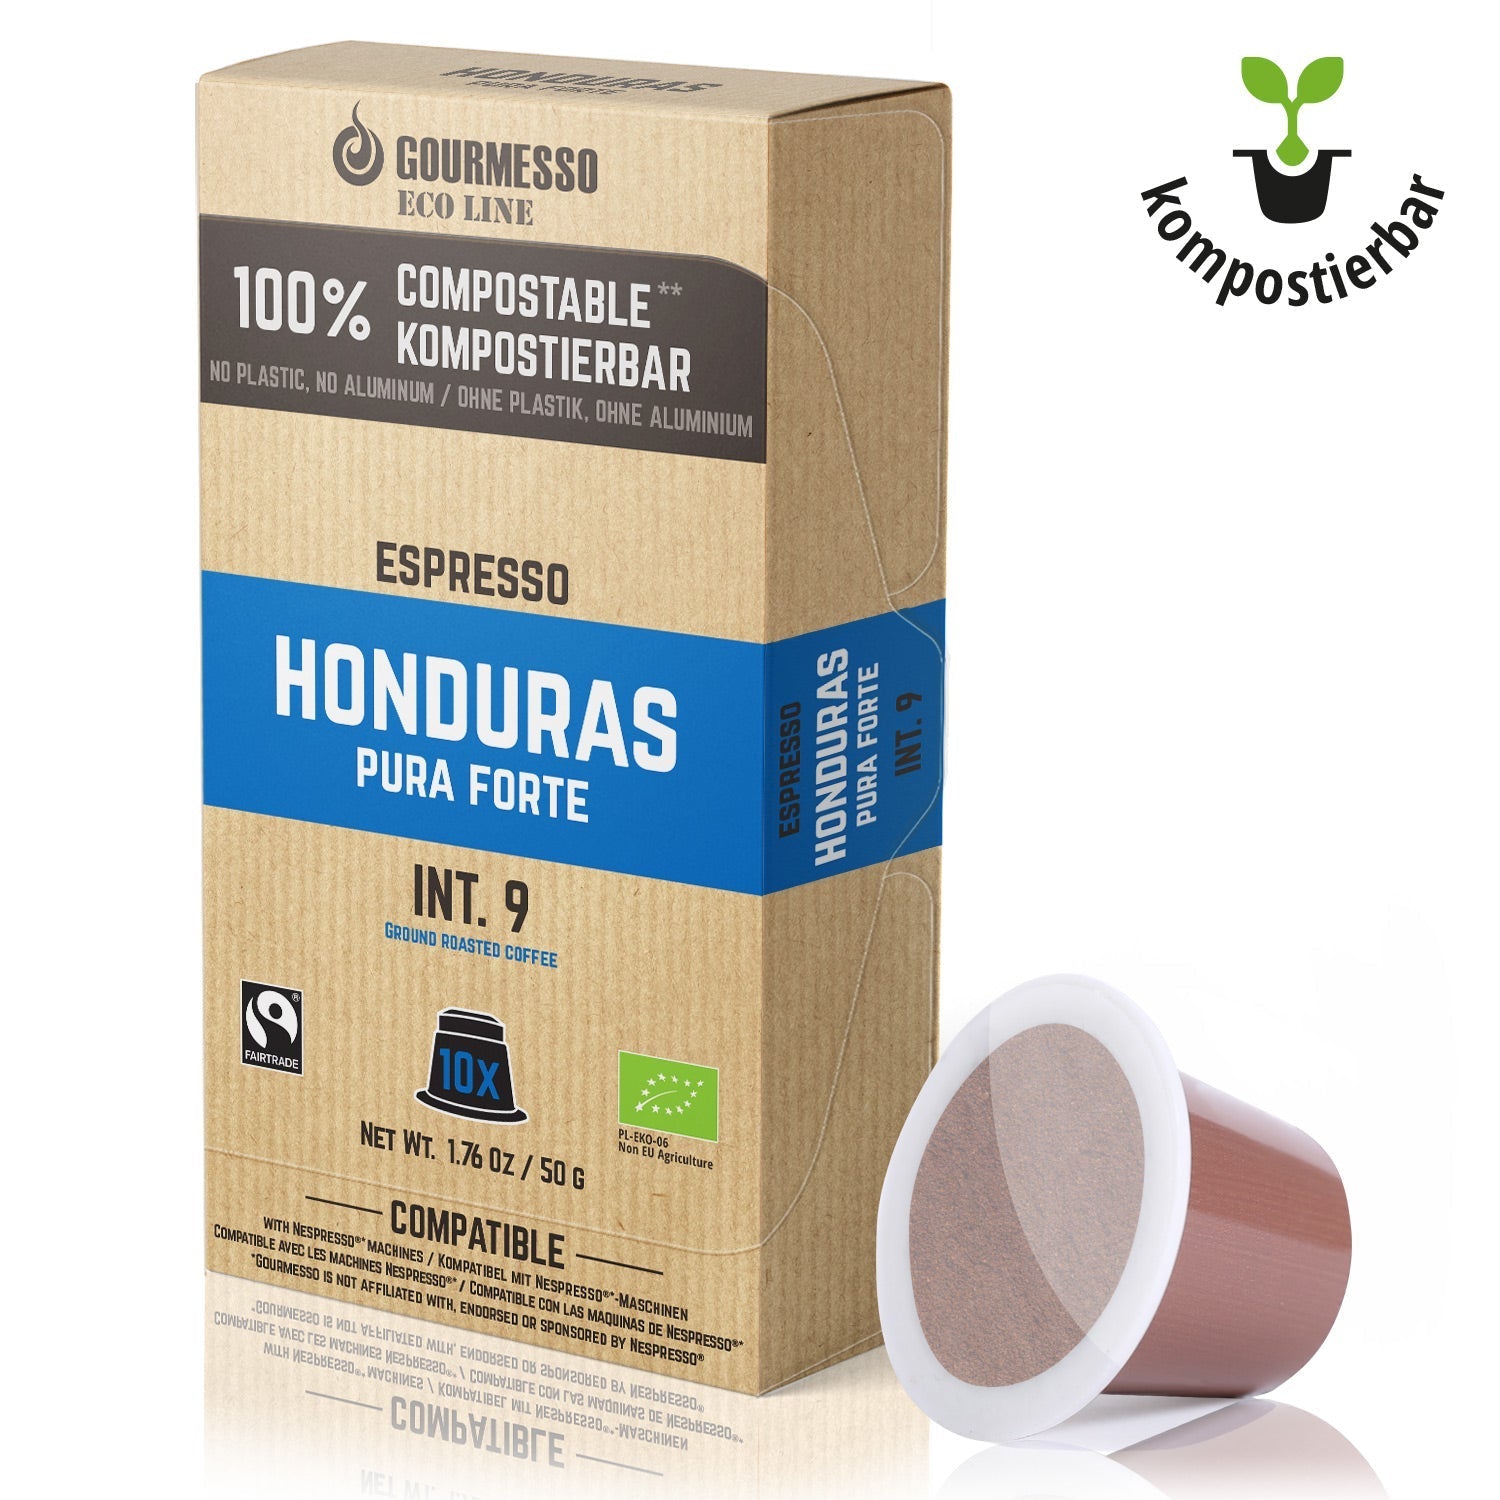 Gourmesso - Eco Line - Honduras Pura Forte - 10 Capsules - Organic-Gourmesso